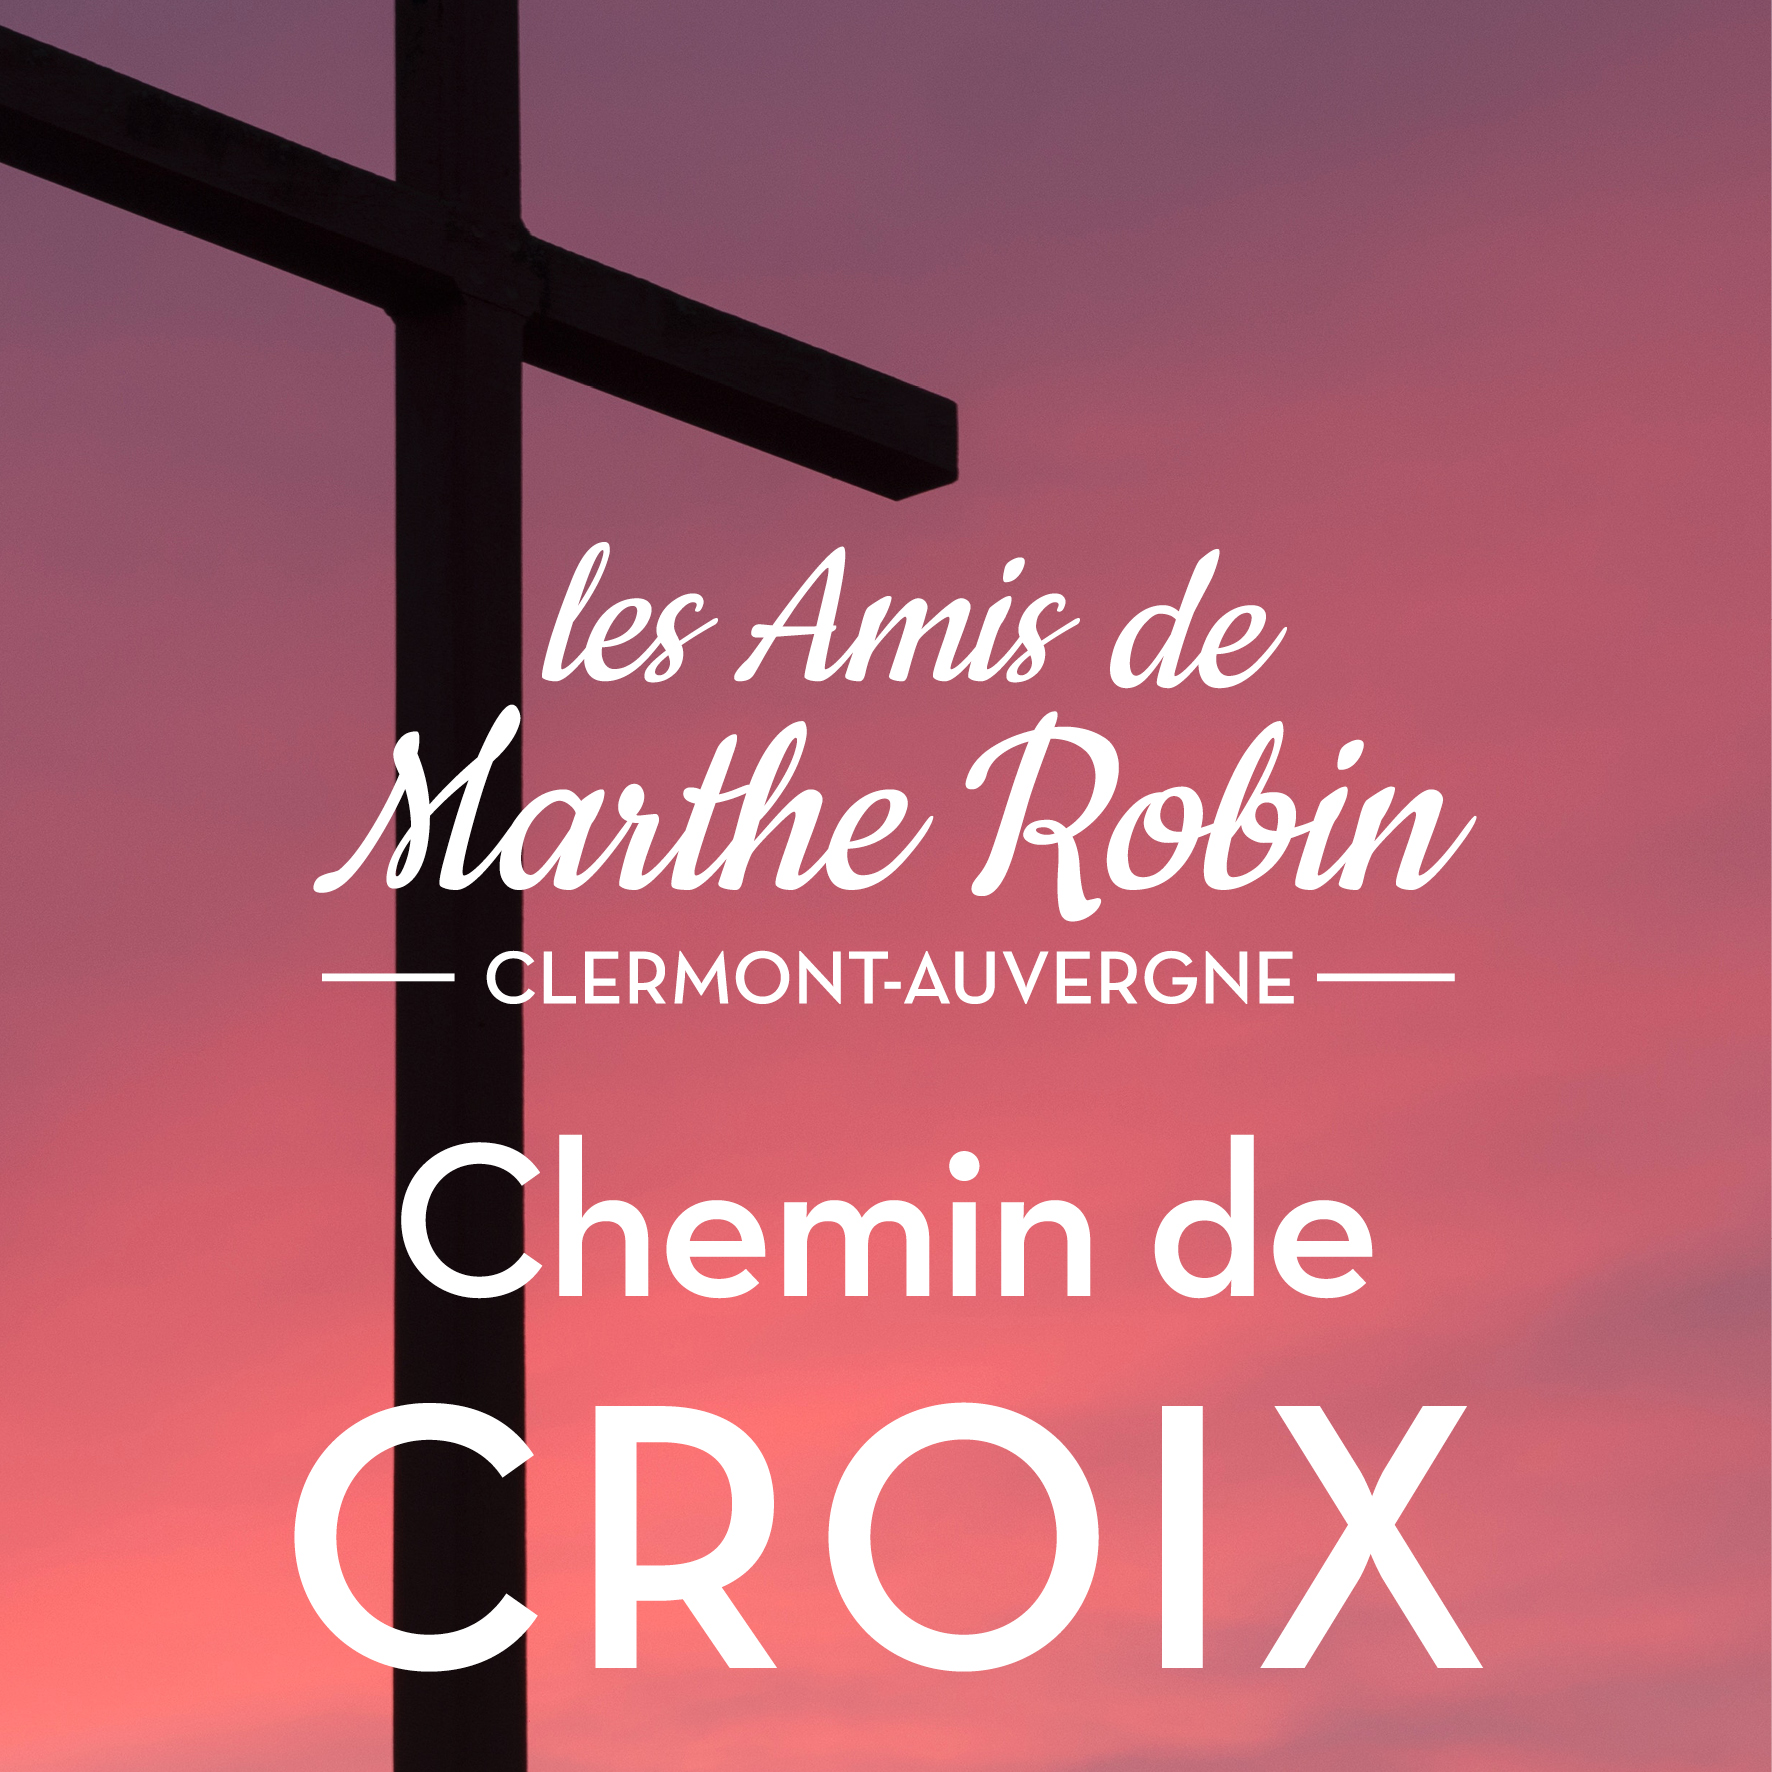 Chemin de croix tous les vendredis de 15h à 16h30 organisé par les amis de Marthe Robin en Auvergne